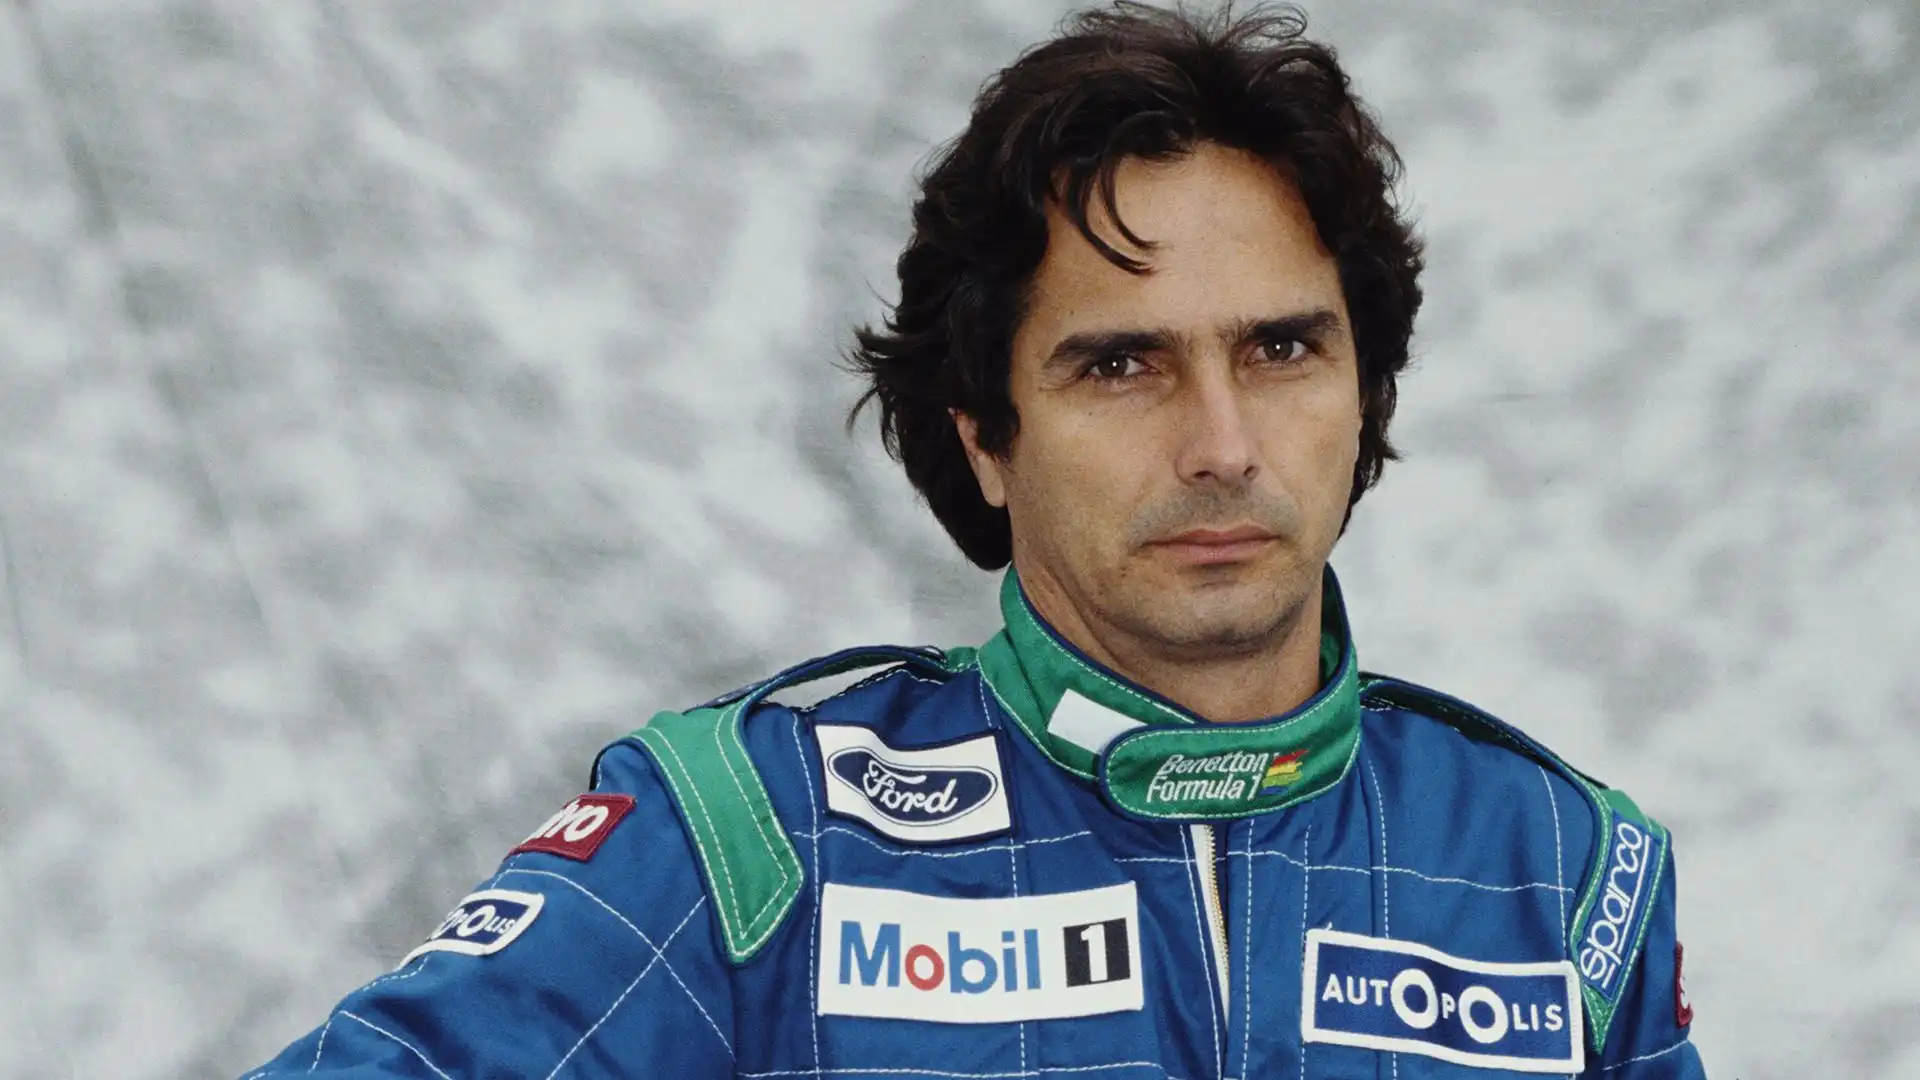 Nelson Piquet, Brasile, #20 Benetton Formula, Benetton B190 Ford V8